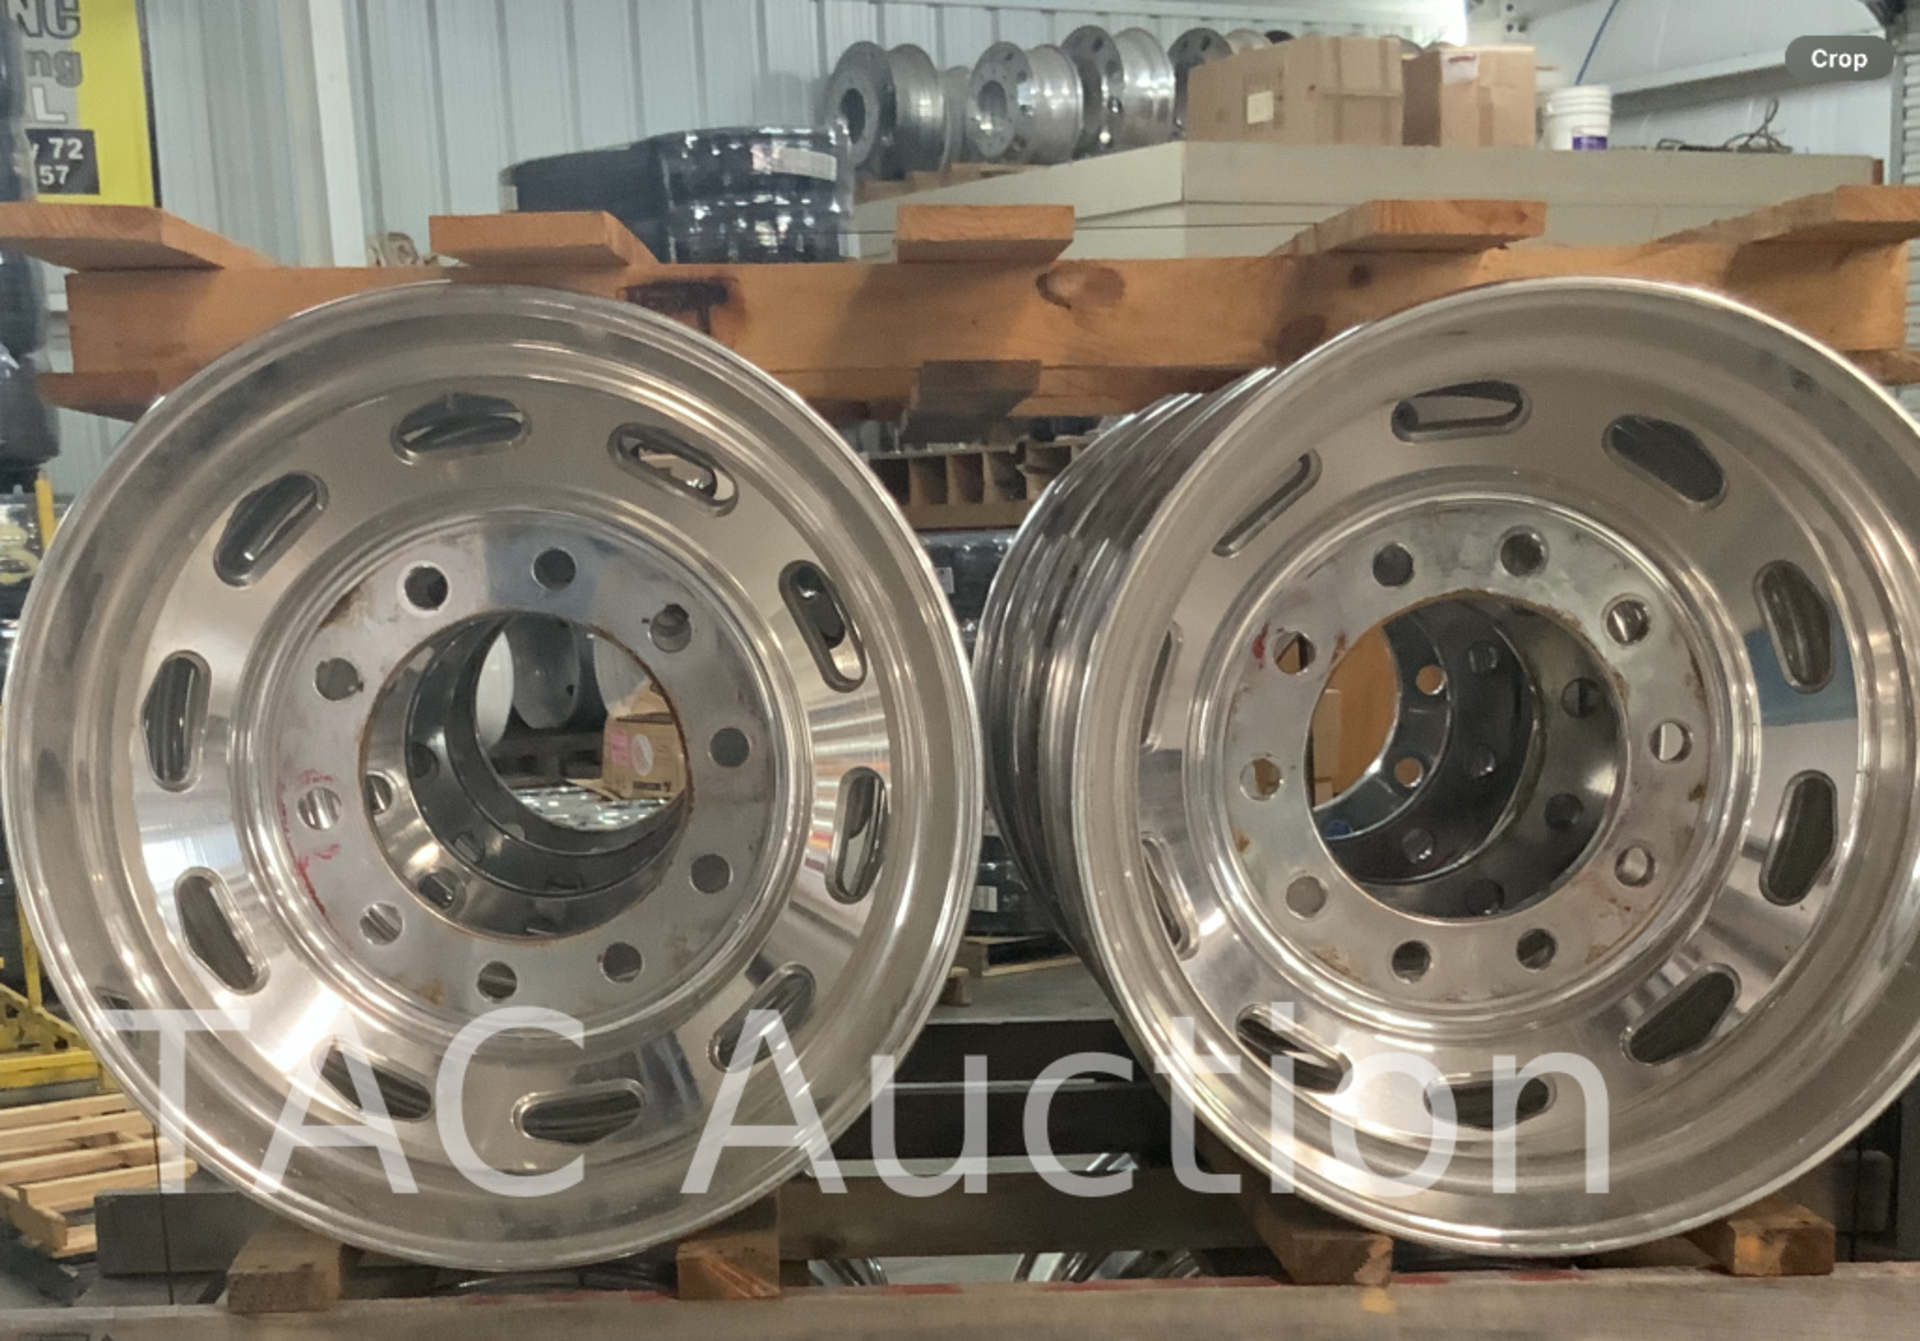 New (8) Accuride Aluminum Wheels 8.25 X 22.5 - Bild 2 aus 3